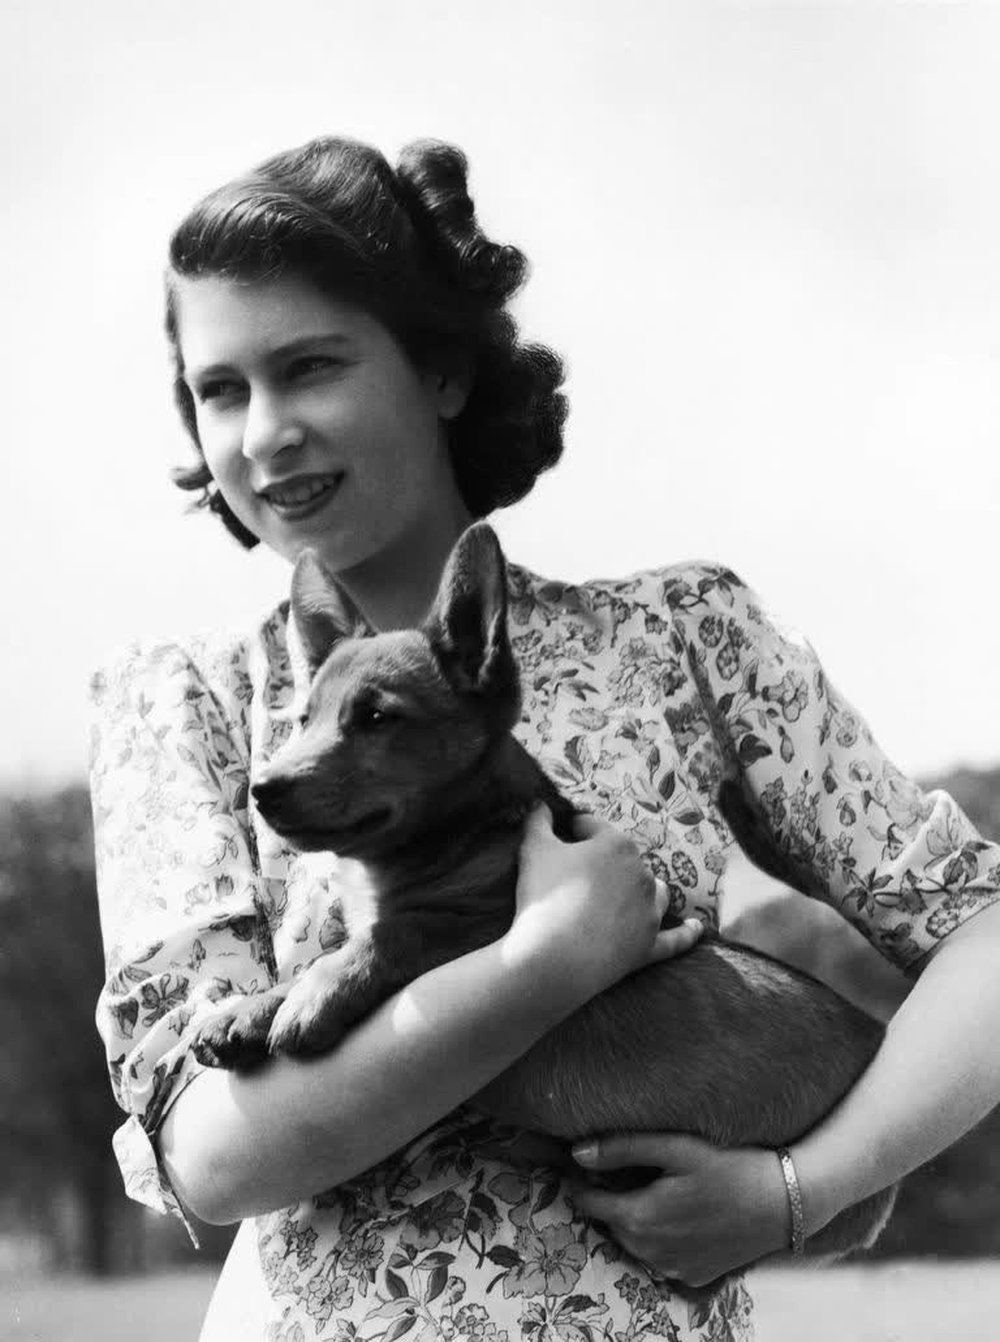 Bức thư đầy cảm động của Nữ vương gửi bác sĩ thú y chứng minh tình yêu vô bờ mà bà dành cho các chú cún - ảnh 2